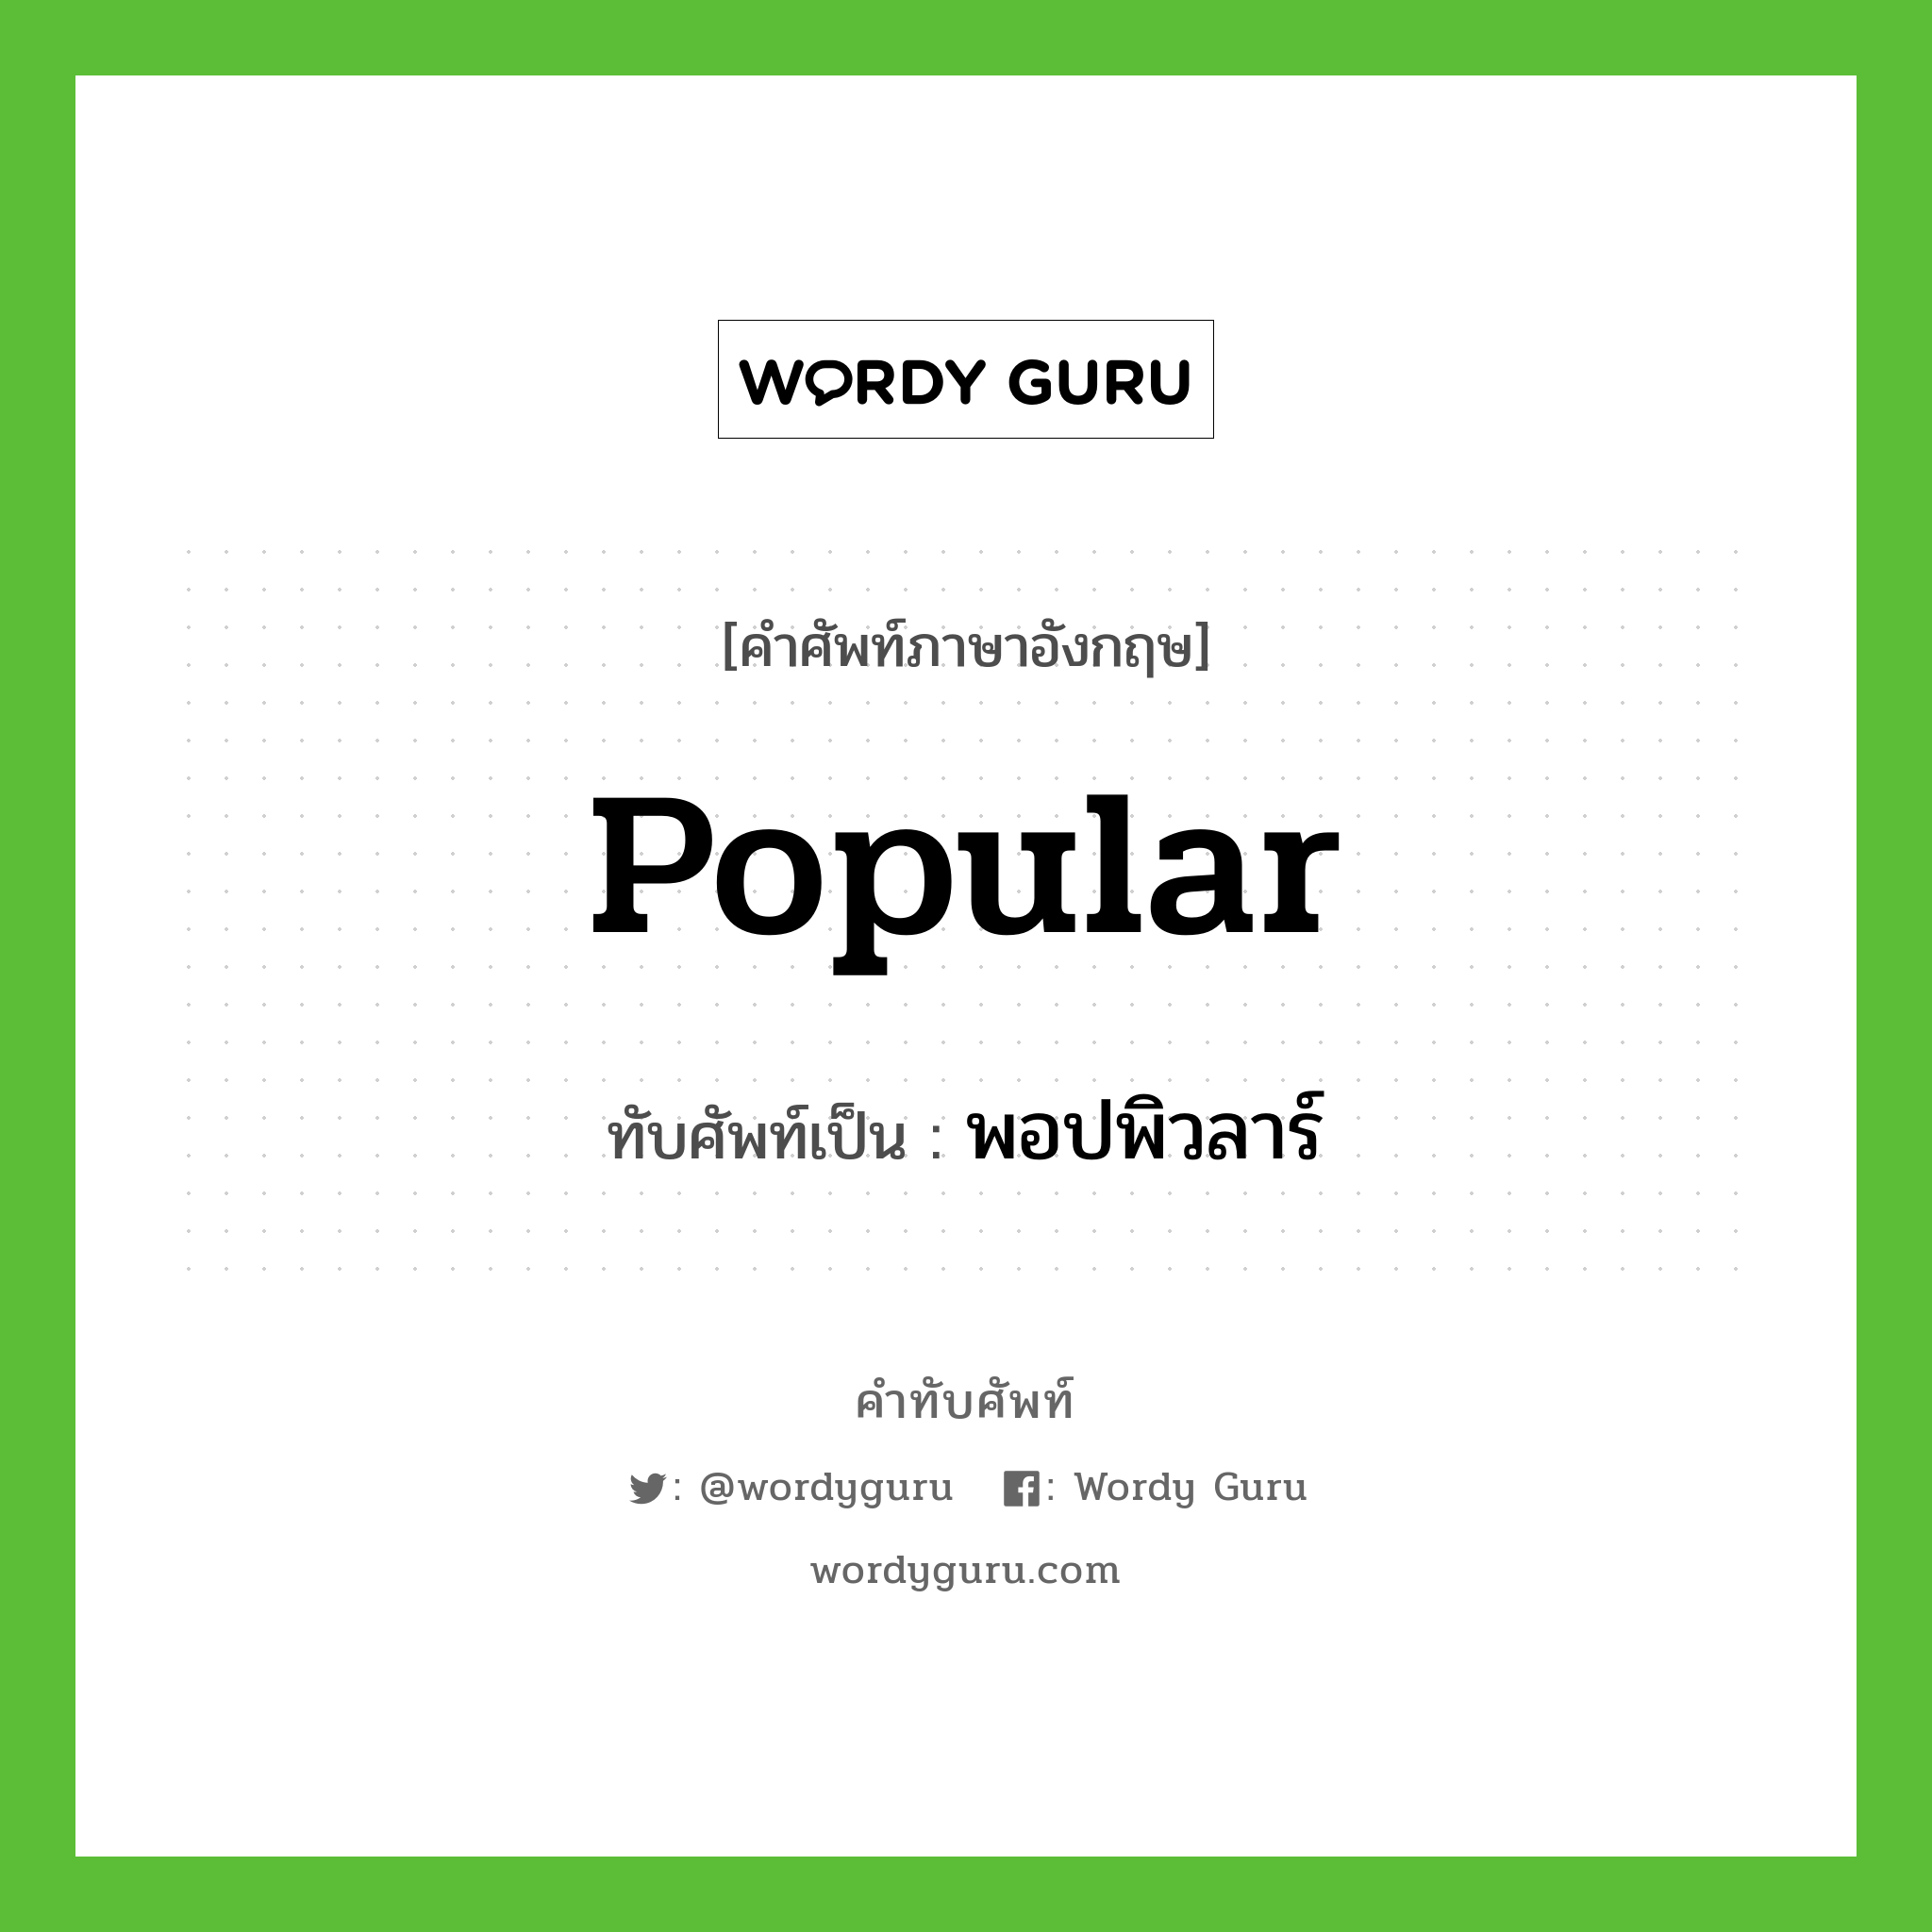 popular เขียนเป็นคำไทยว่าอะไร?, คำศัพท์ภาษาอังกฤษ popular ทับศัพท์เป็น พอปพิวลาร์